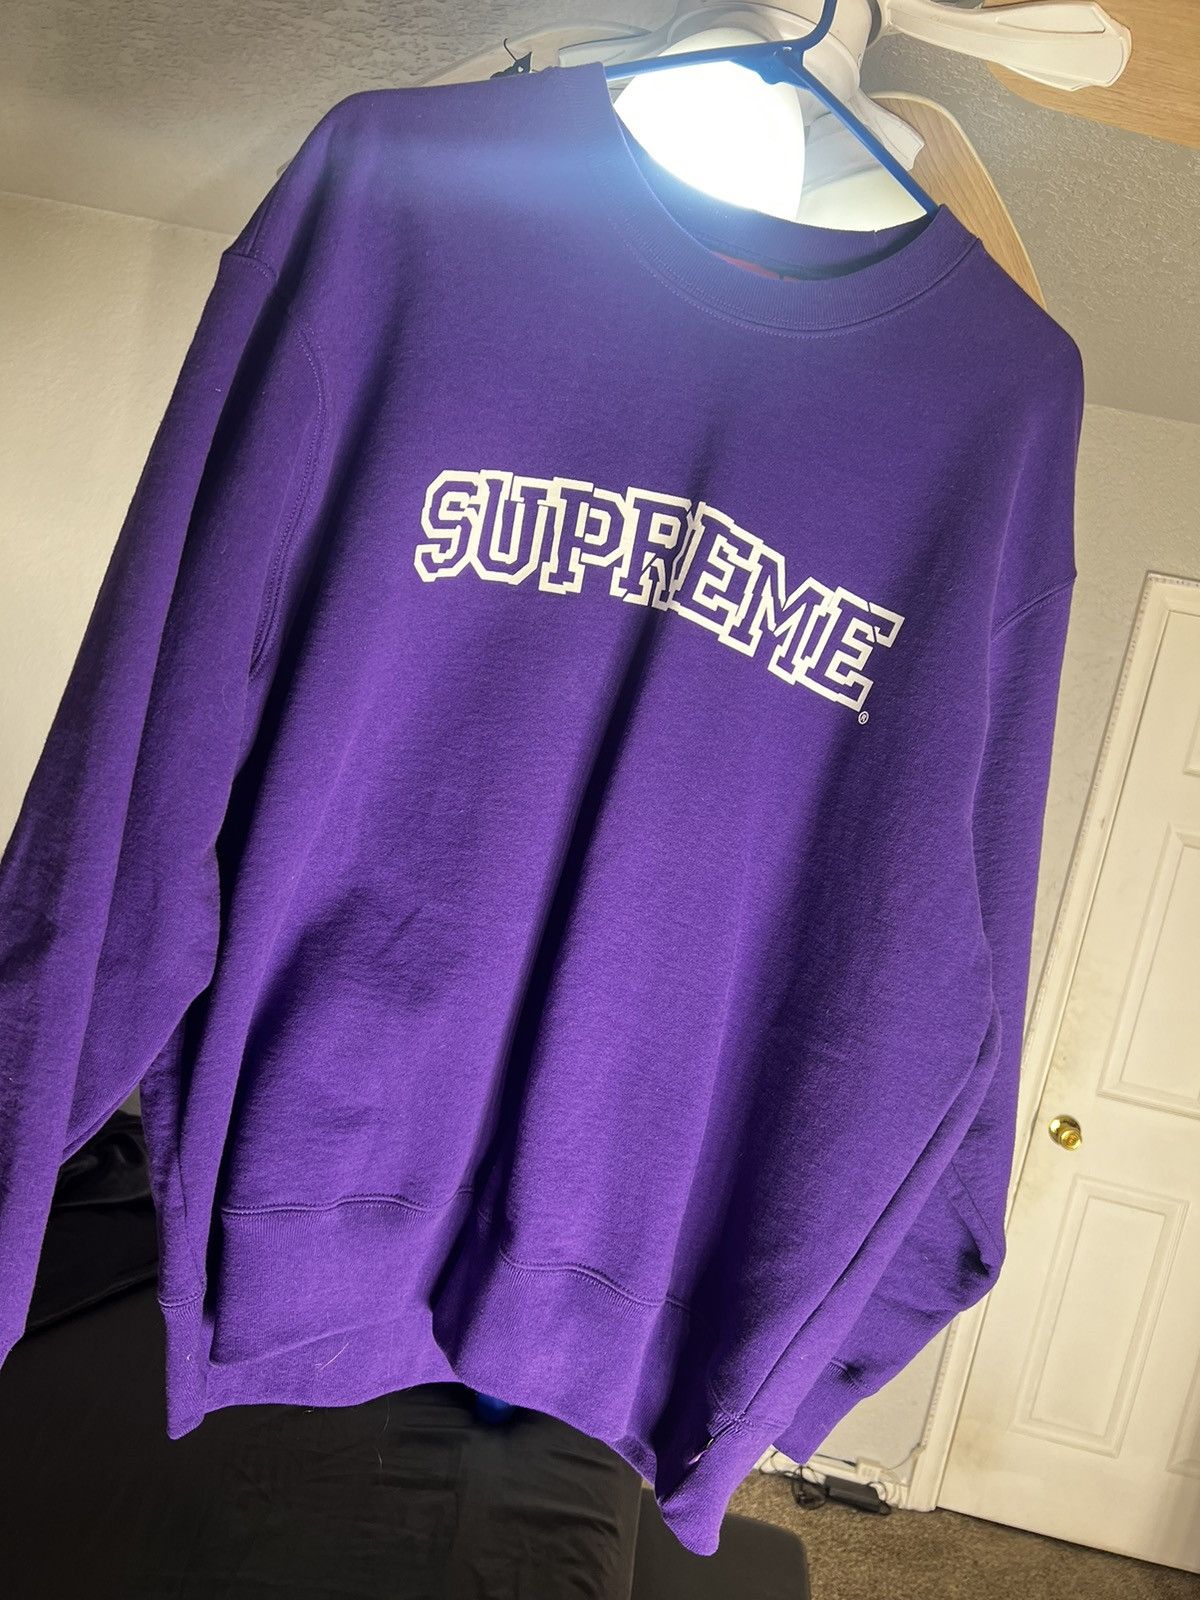 Supreme Supreme 2003A/W SAMURAI knit | Grailed